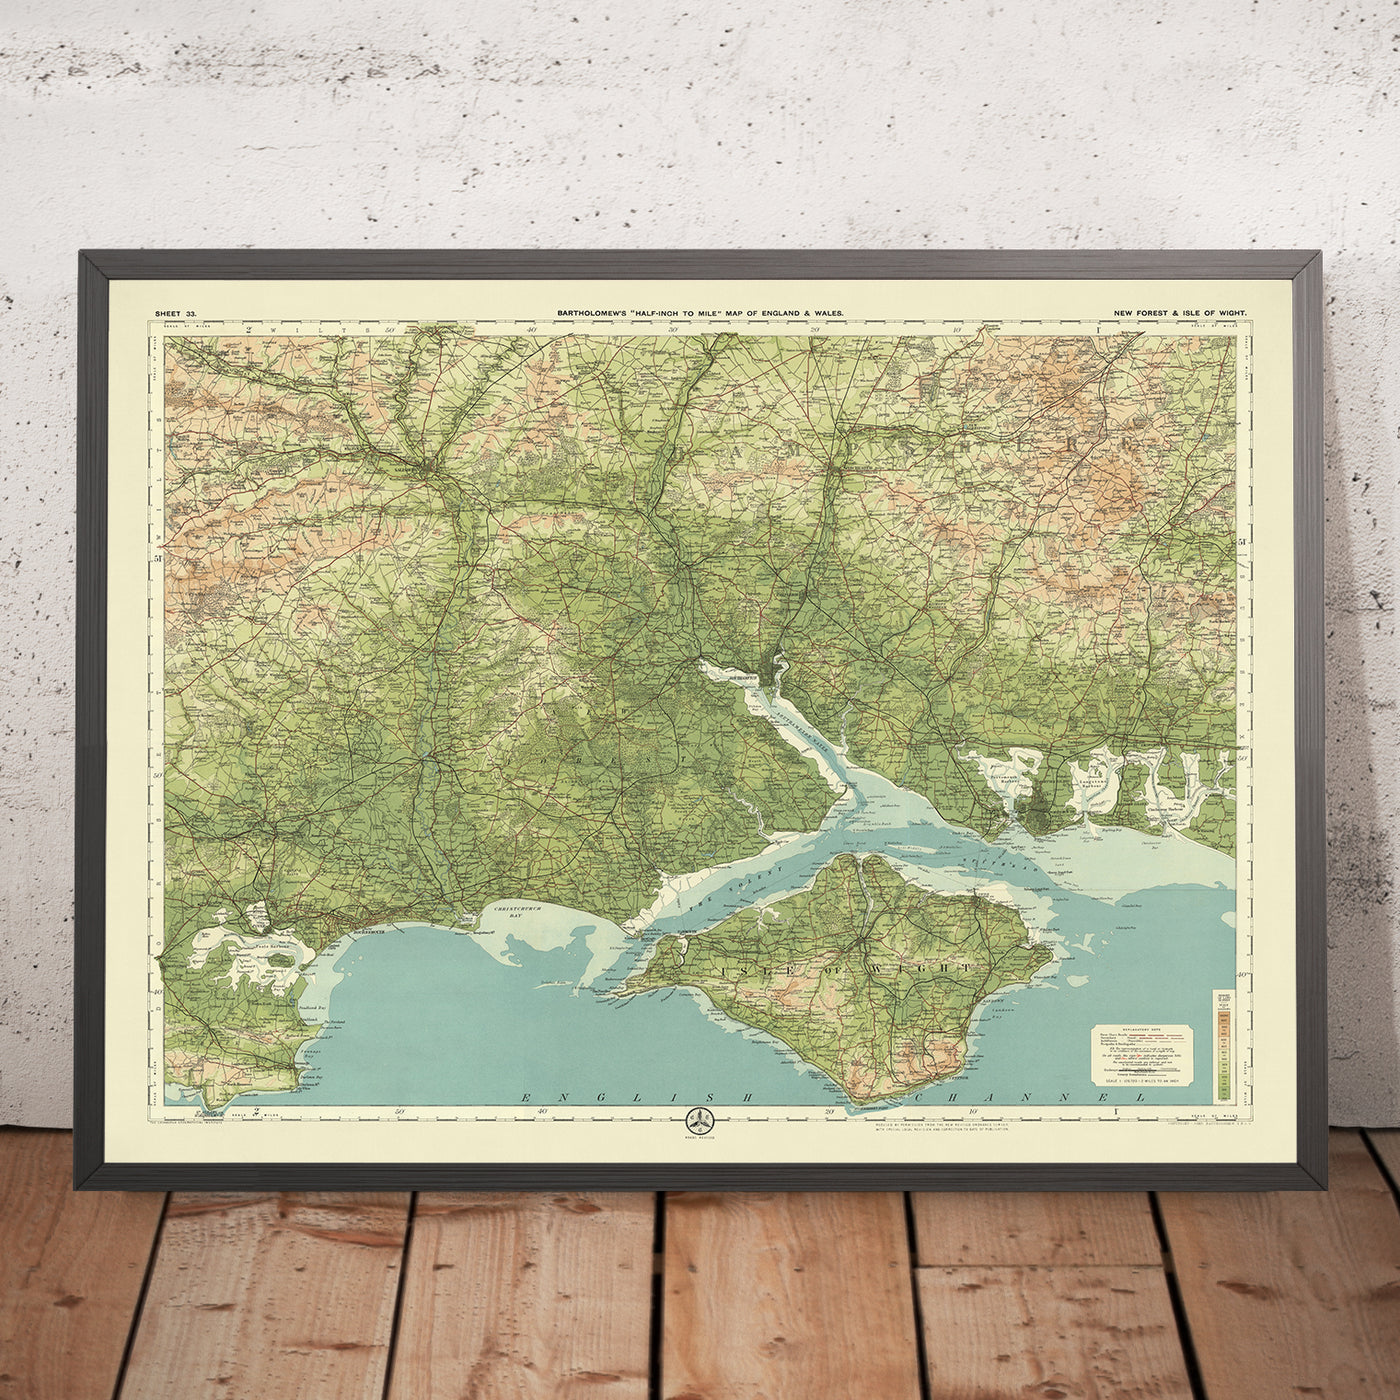 Ancienne carte OS de New Forest et de l'île de Wight, Hampshire par Bartholomew, 1901 : Southampton, Bournemouth, New Forest, île de Wight, château de Carisbrooke, Needles Rocks